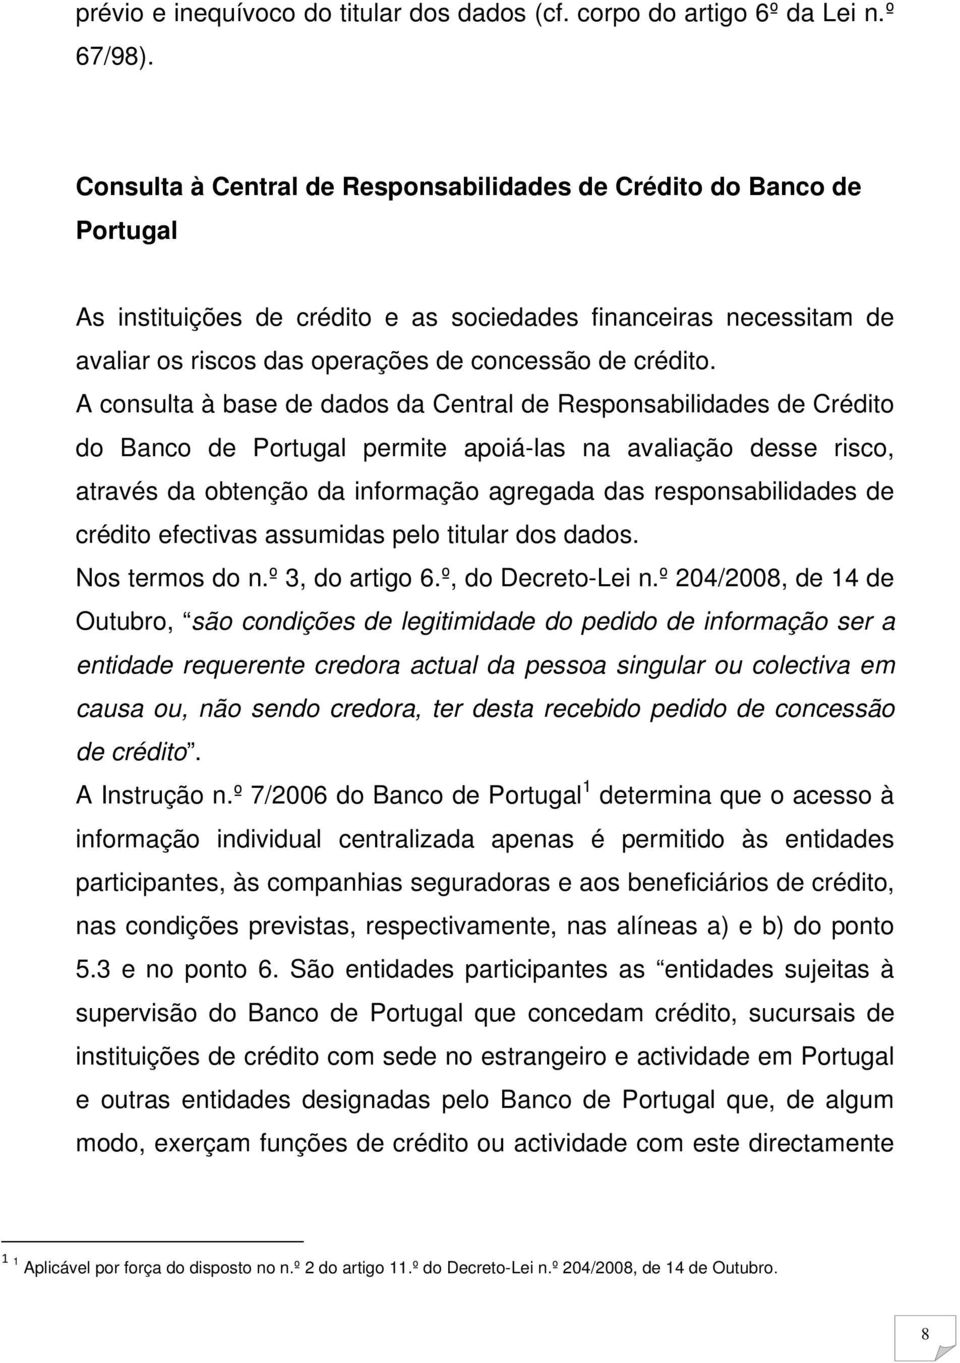 A consulta à base de dados da Central de Responsabilidades de Crédito do Banco de Portugal permite apoiá-las na avaliação desse risco, através da obtenção da informação agregada das responsabilidades